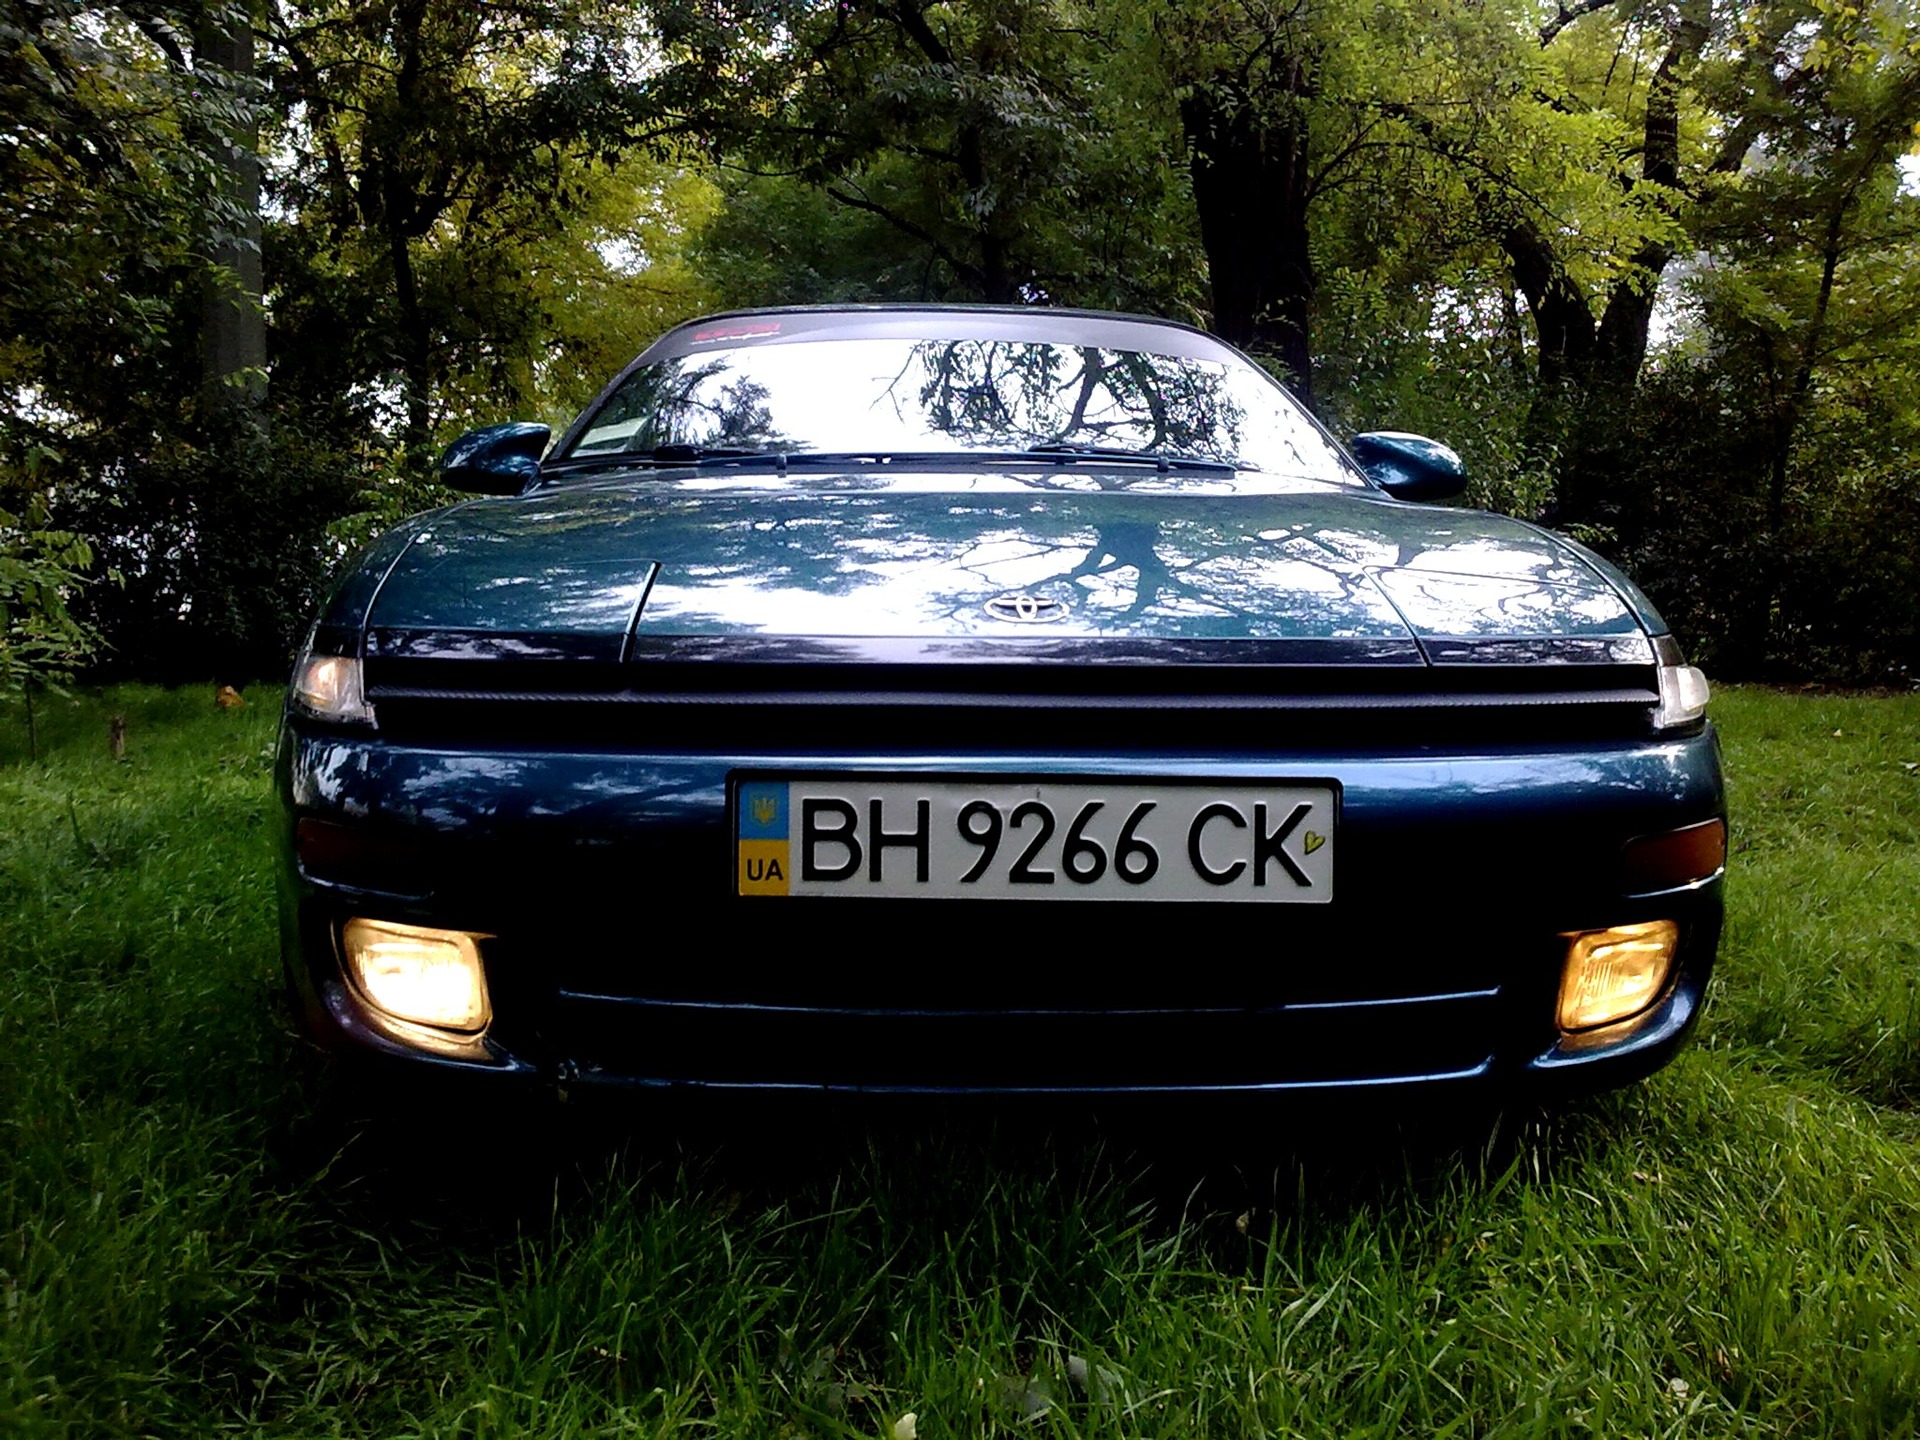 16 2010 Toyota Celica 16 1993